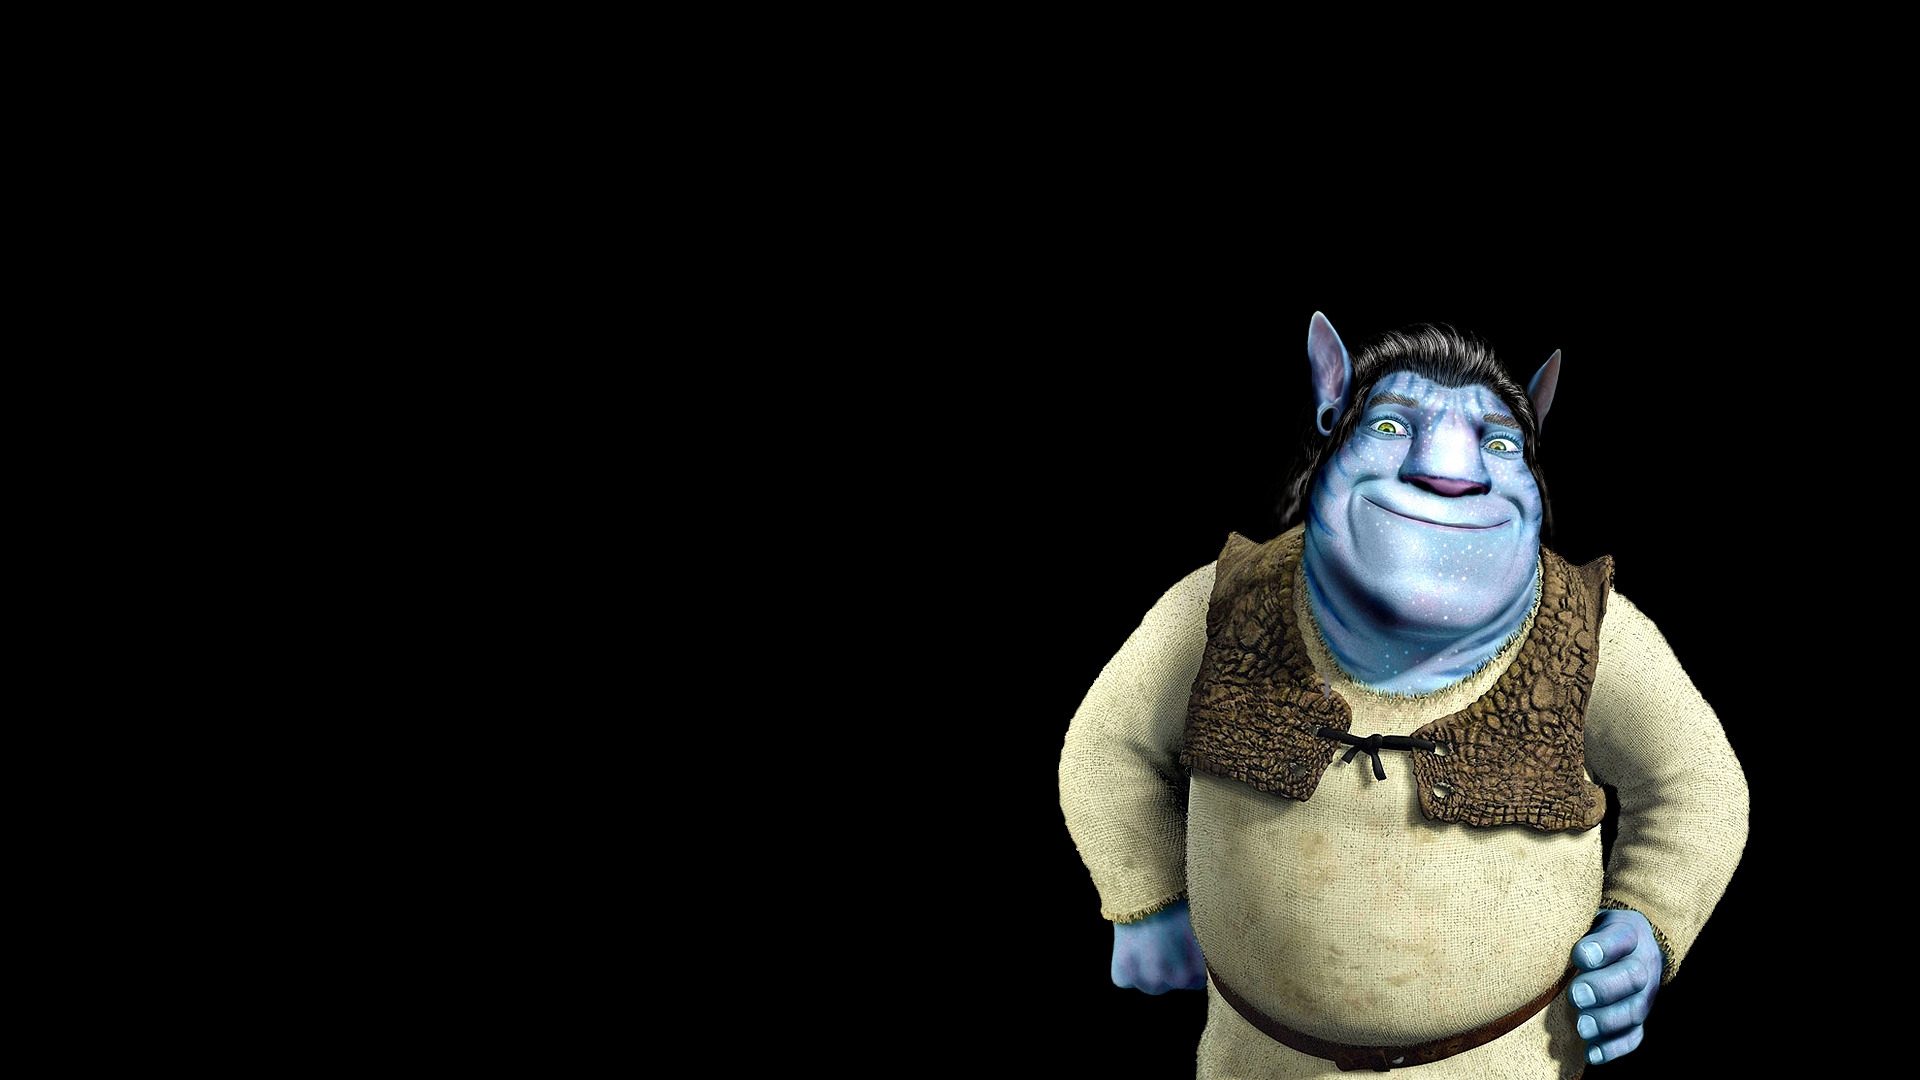 Shrek Avatar for 1920 x 1080 HDTV 1080p resolution